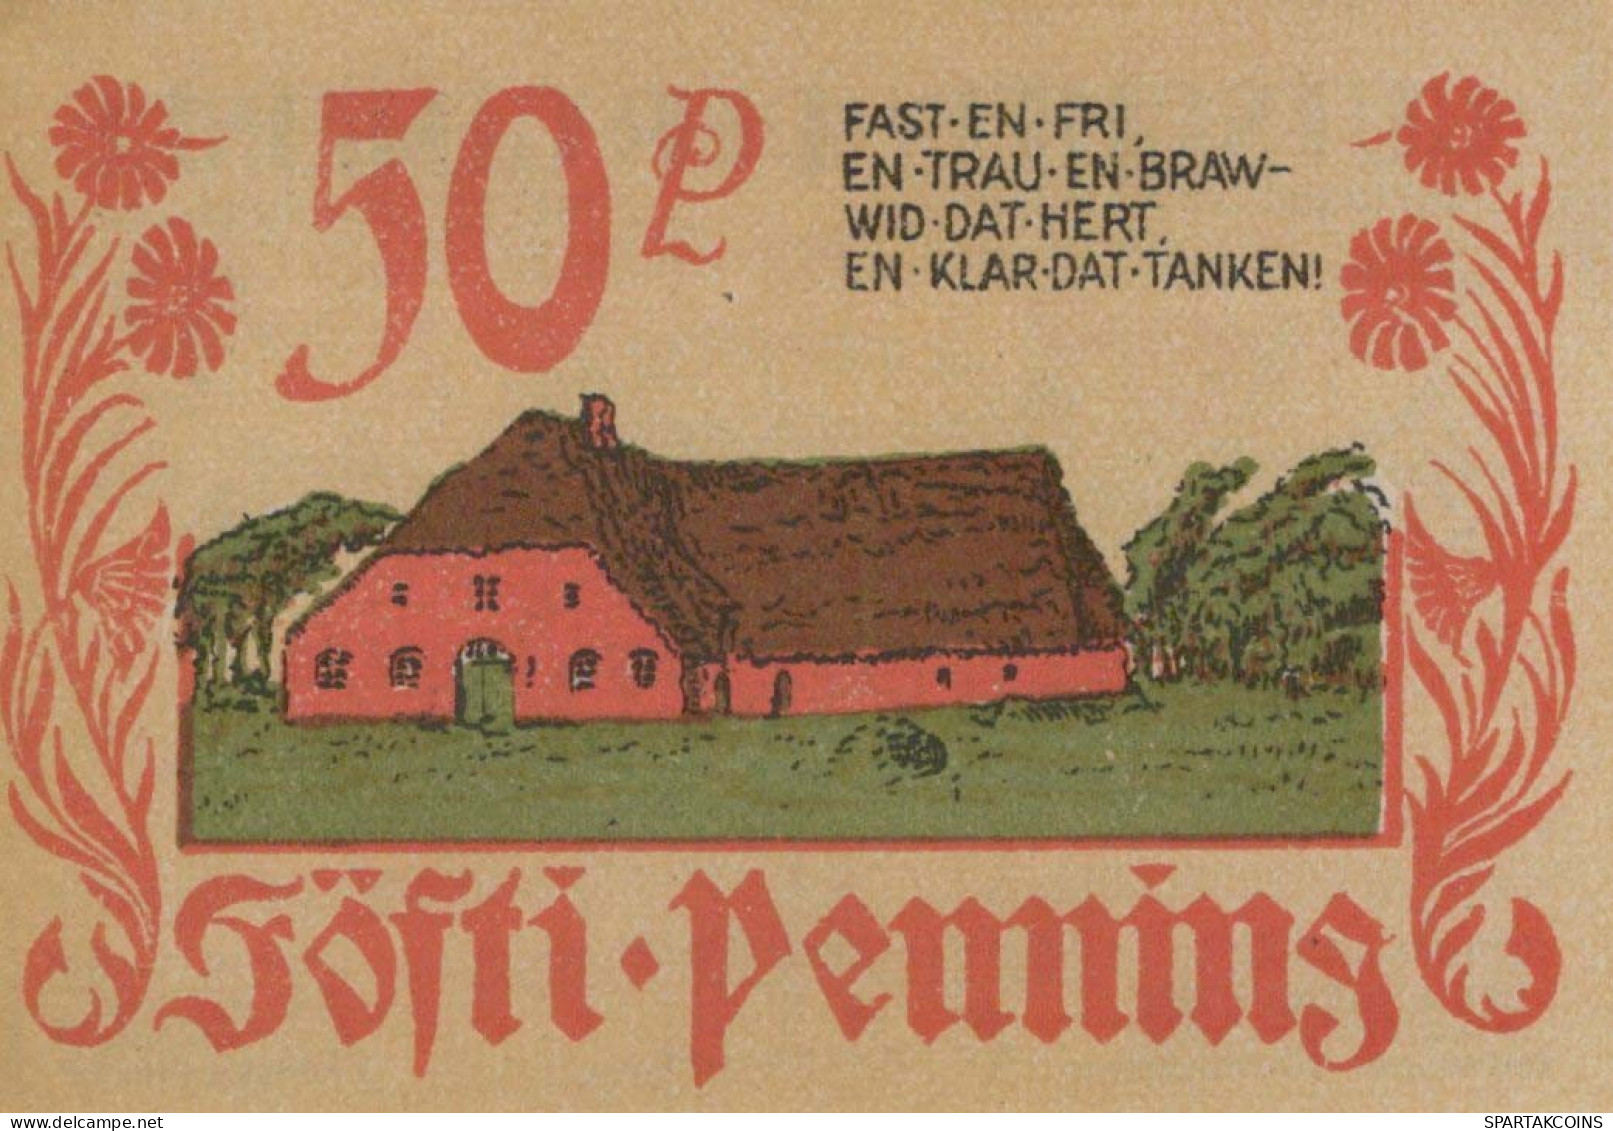 50 PFENNIG 1922 Stadt BORDELUM Schleswig-Holstein UNC DEUTSCHLAND Notgeld #PA262 - [11] Local Banknote Issues